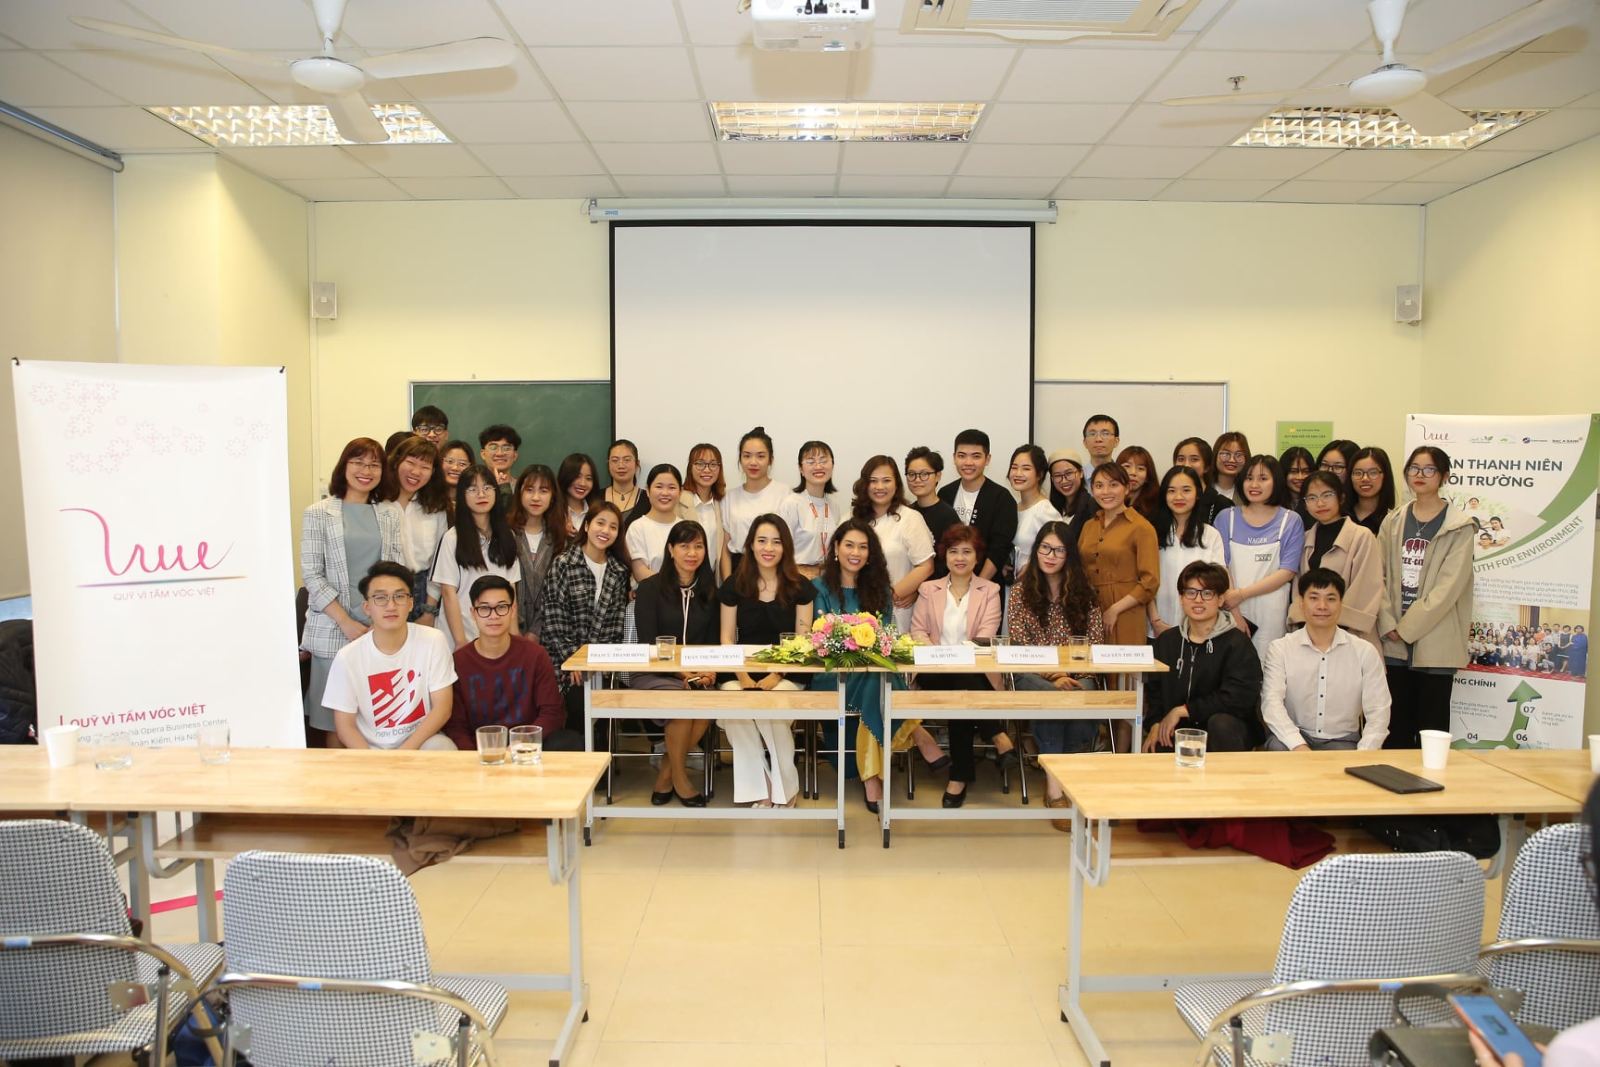 Quỹ Vì Tầm Vóc Việt tổ chức Tọa đàm "Thanh niên và các tổ chức xã hội - Hành động vì môi trường xanh "Giới thiệu chuỗi phim phi lợi nhuận vì môi trường"